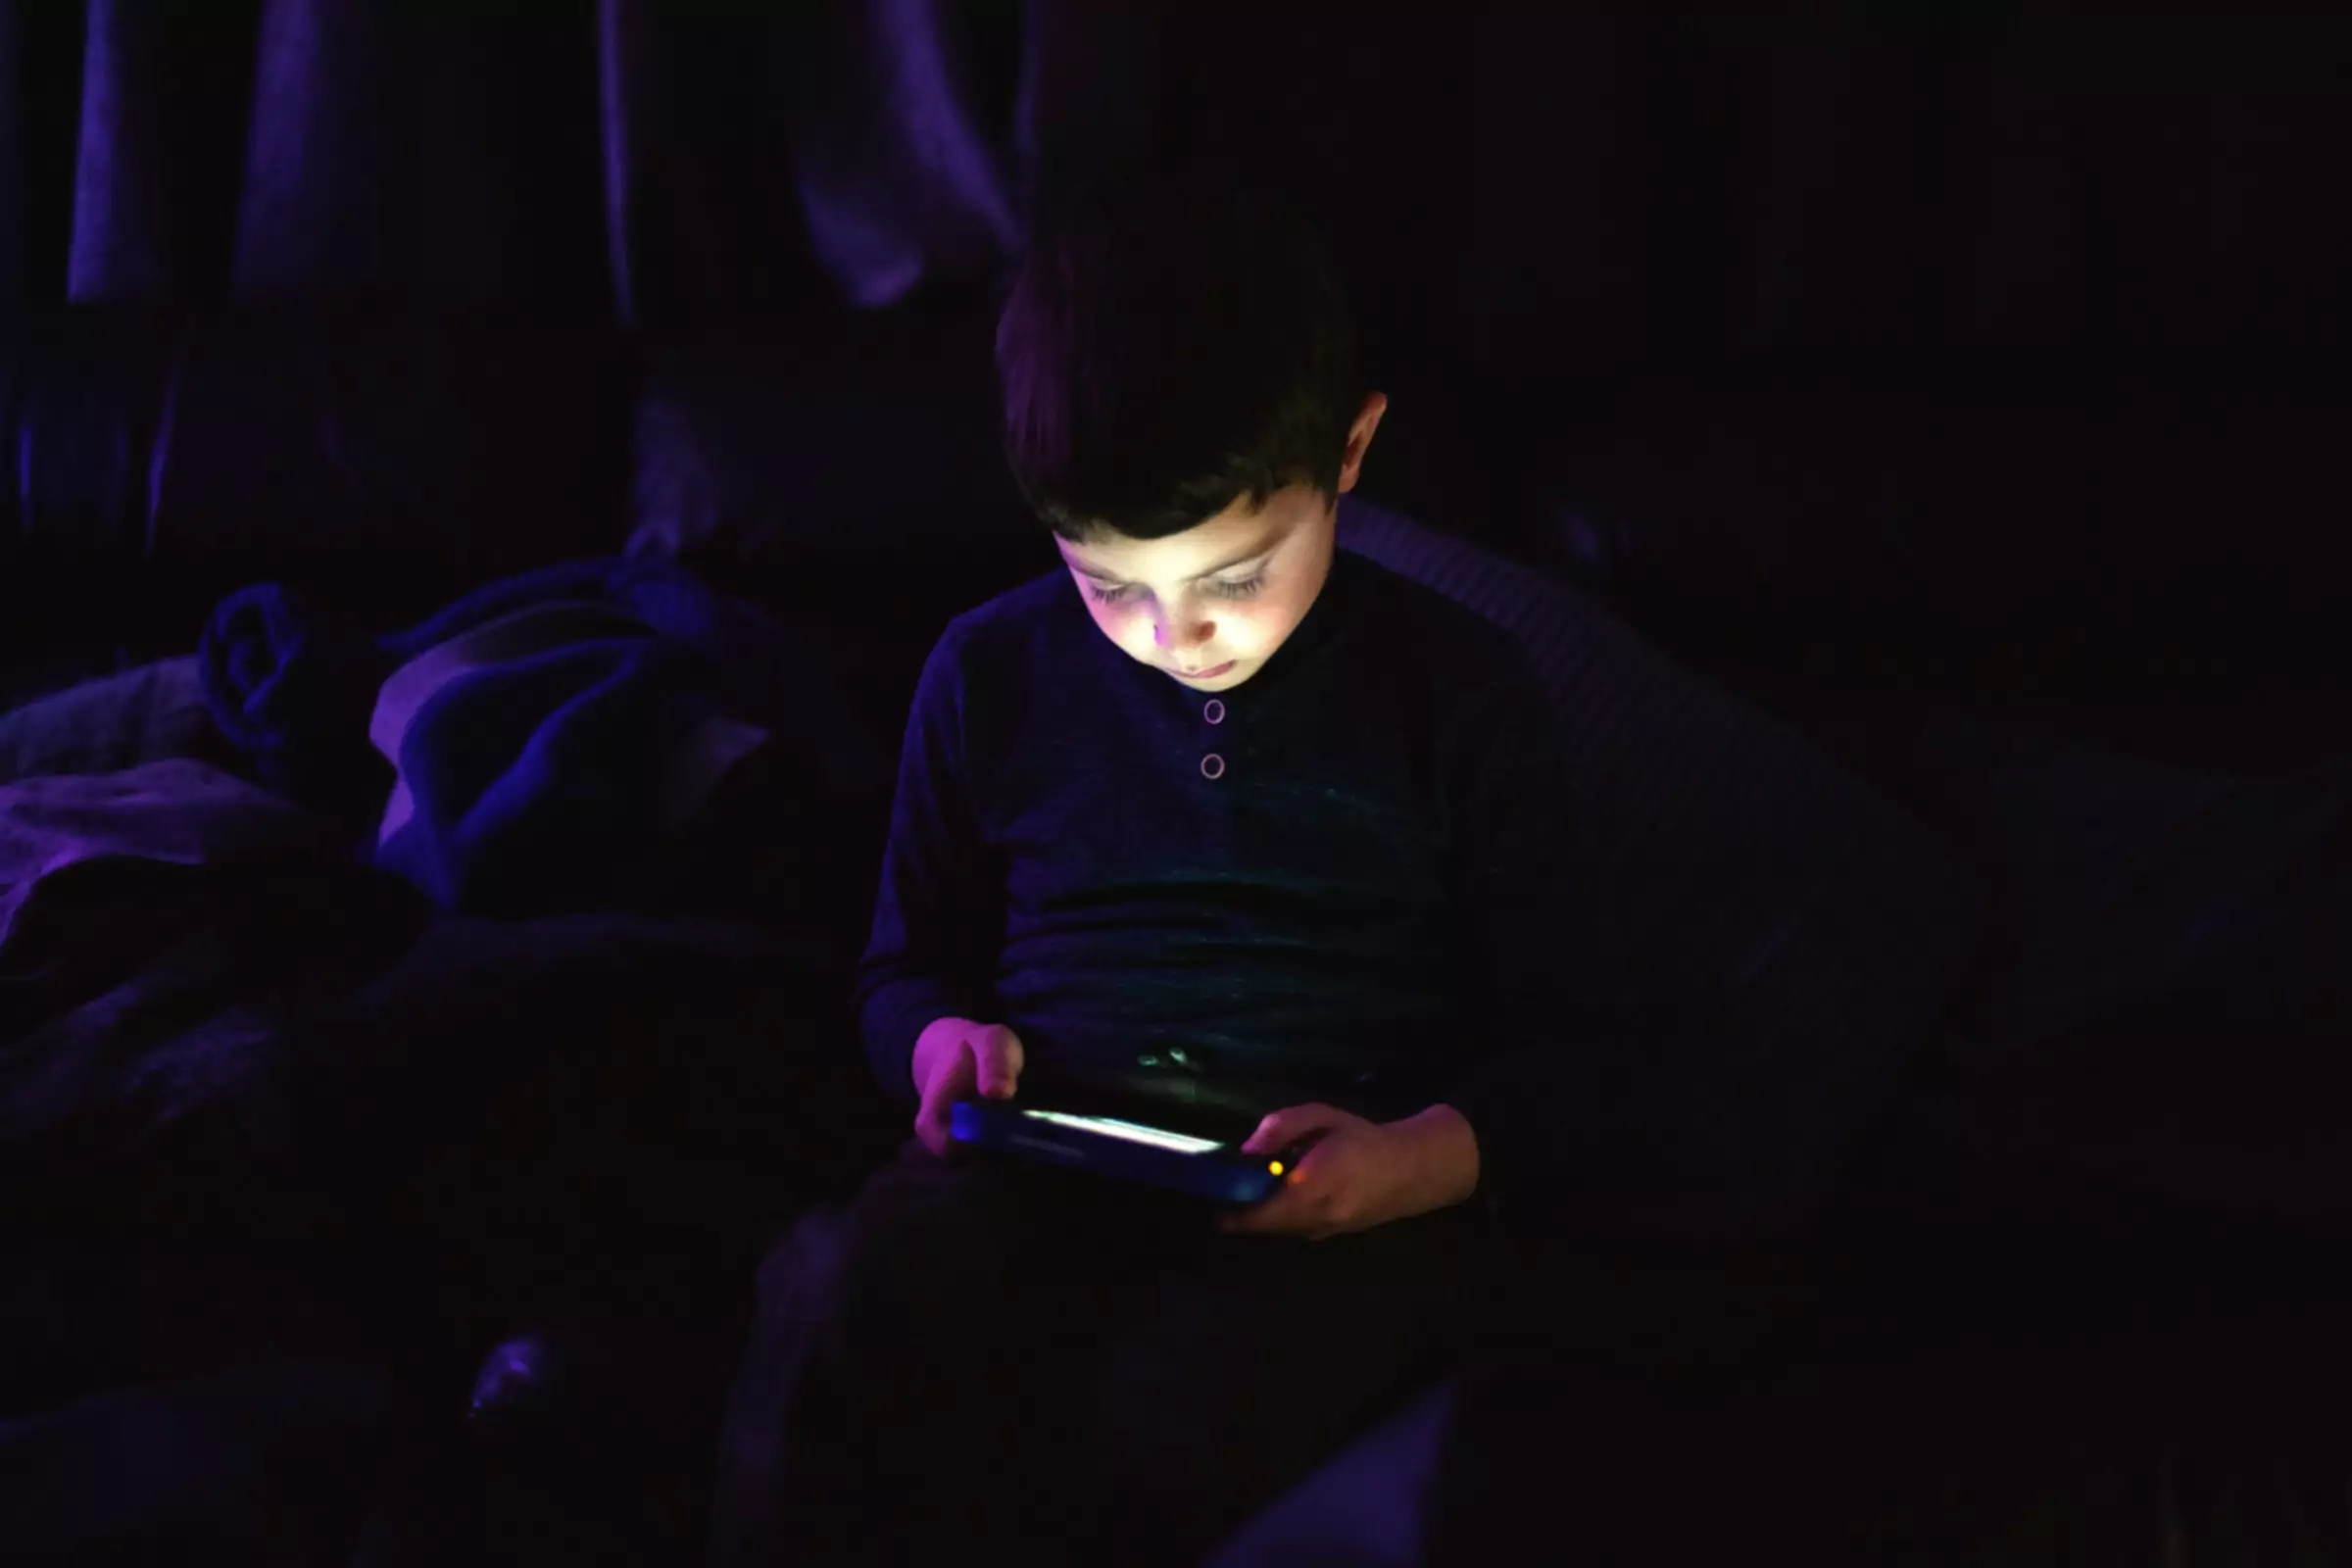 karanlık odada tabletle oynayan küçük çocuk